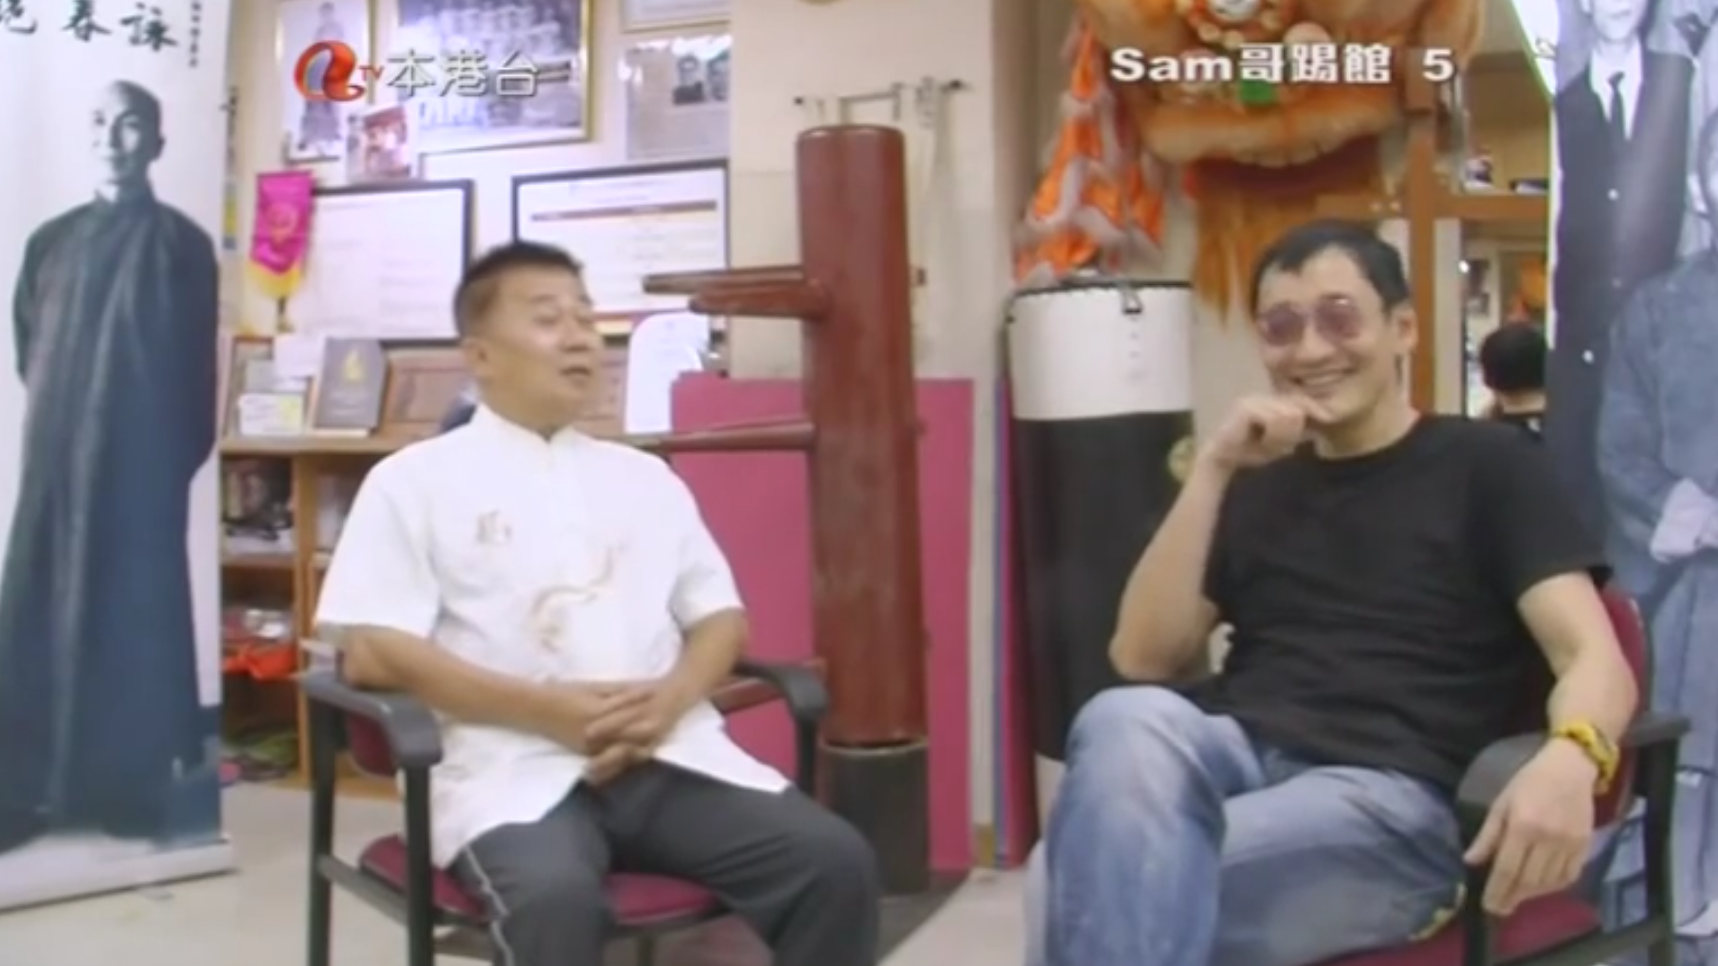 2014年11月 梁錦棠師父接受亞洲電視節目《Sam 哥踢館》訪問